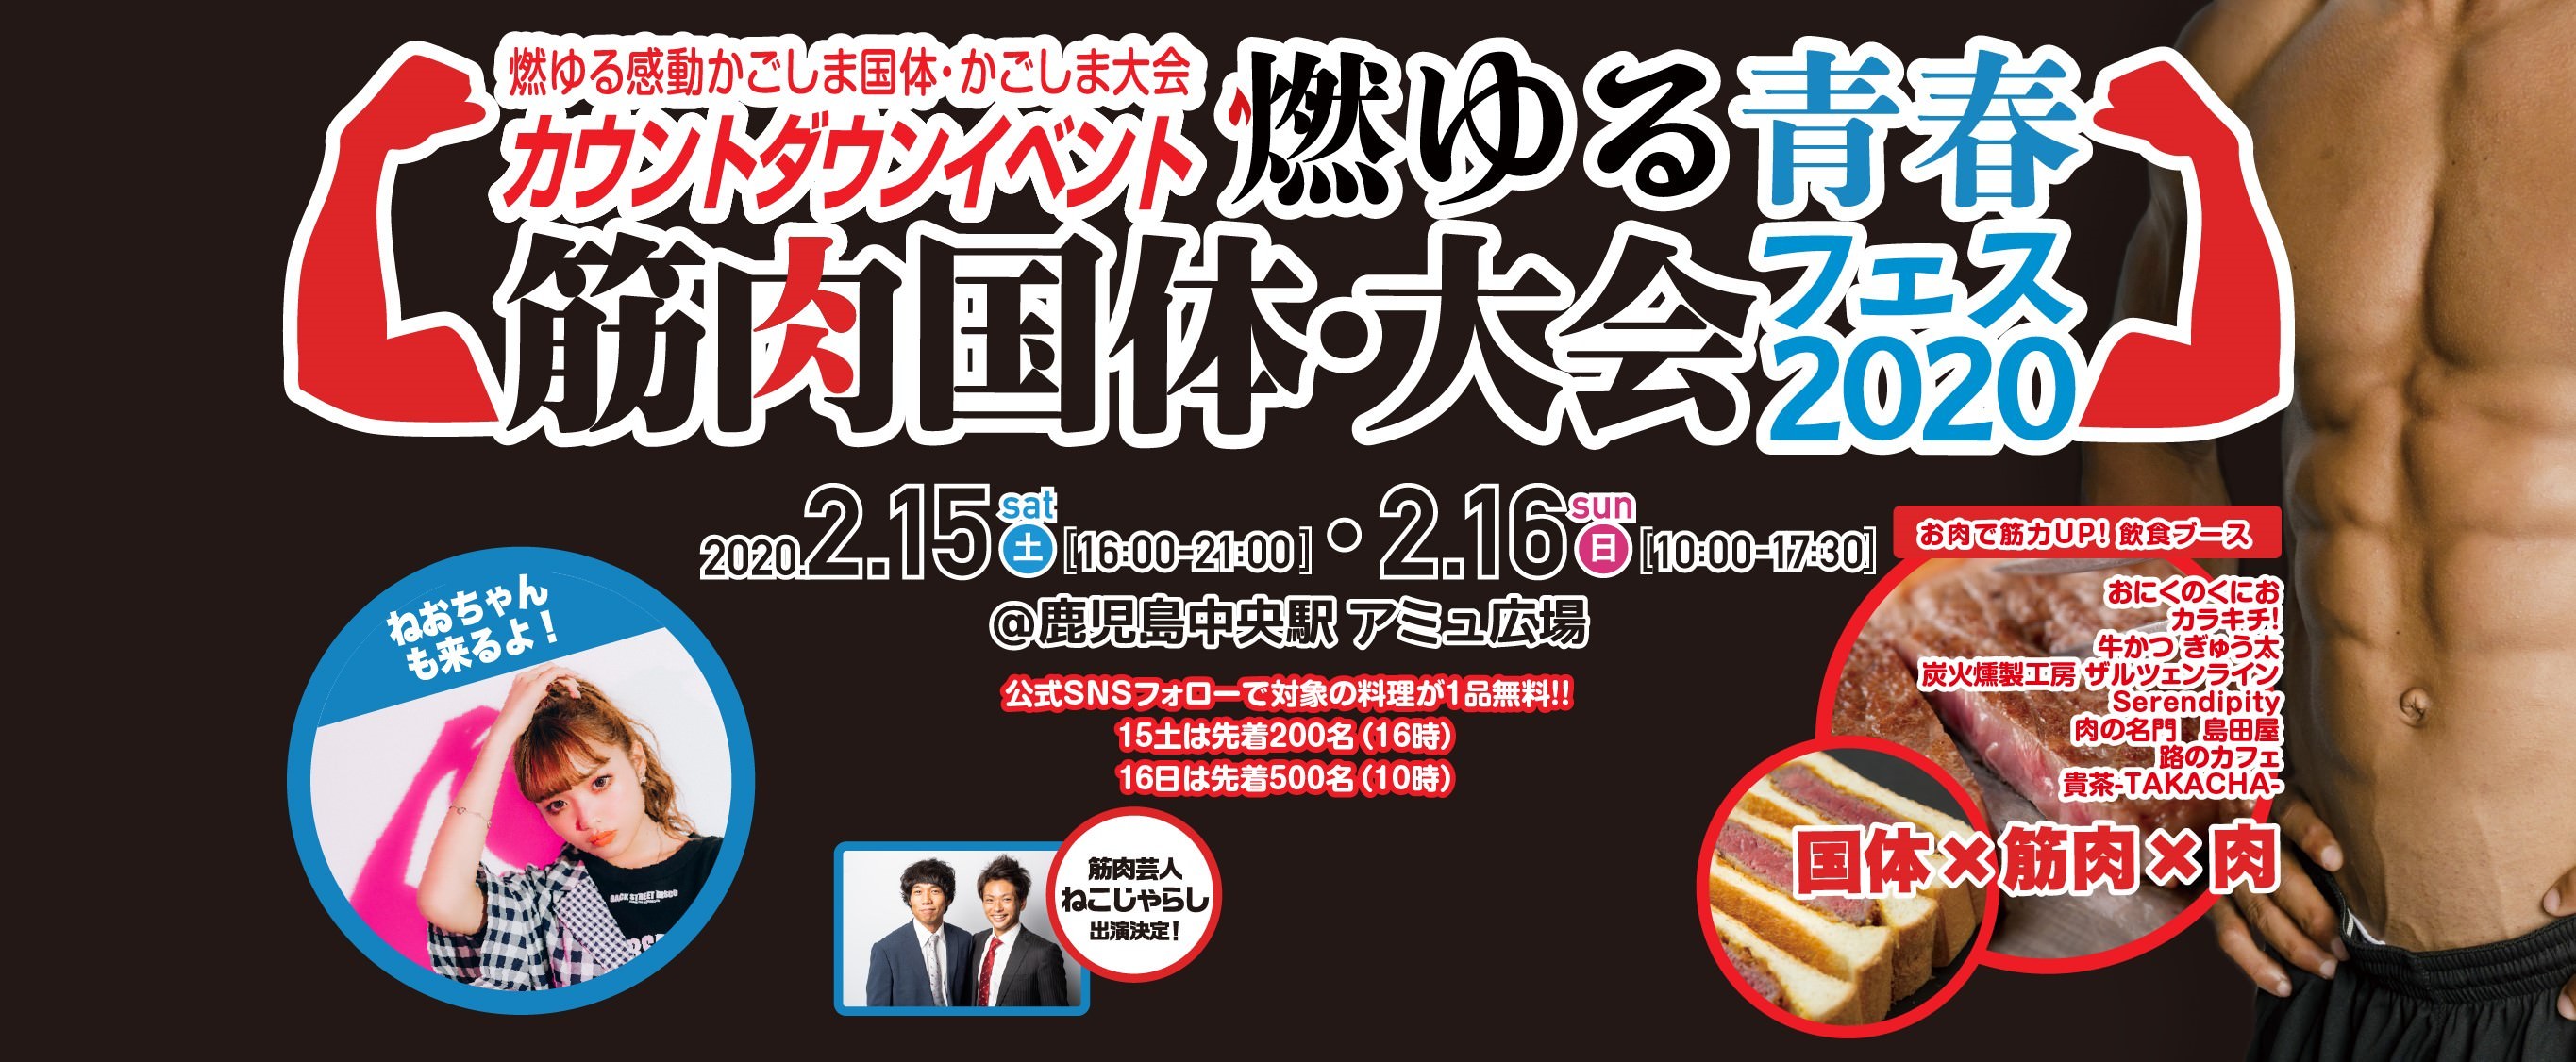 GODIVA 日本上陸48周年 キャンペーン「AKB48、 NMB48、HKT48  参加メンバー決定」■関東2会場 、関西4会場、九州1会場にて、全7会場14イベントに合計2,860名様をご招待！